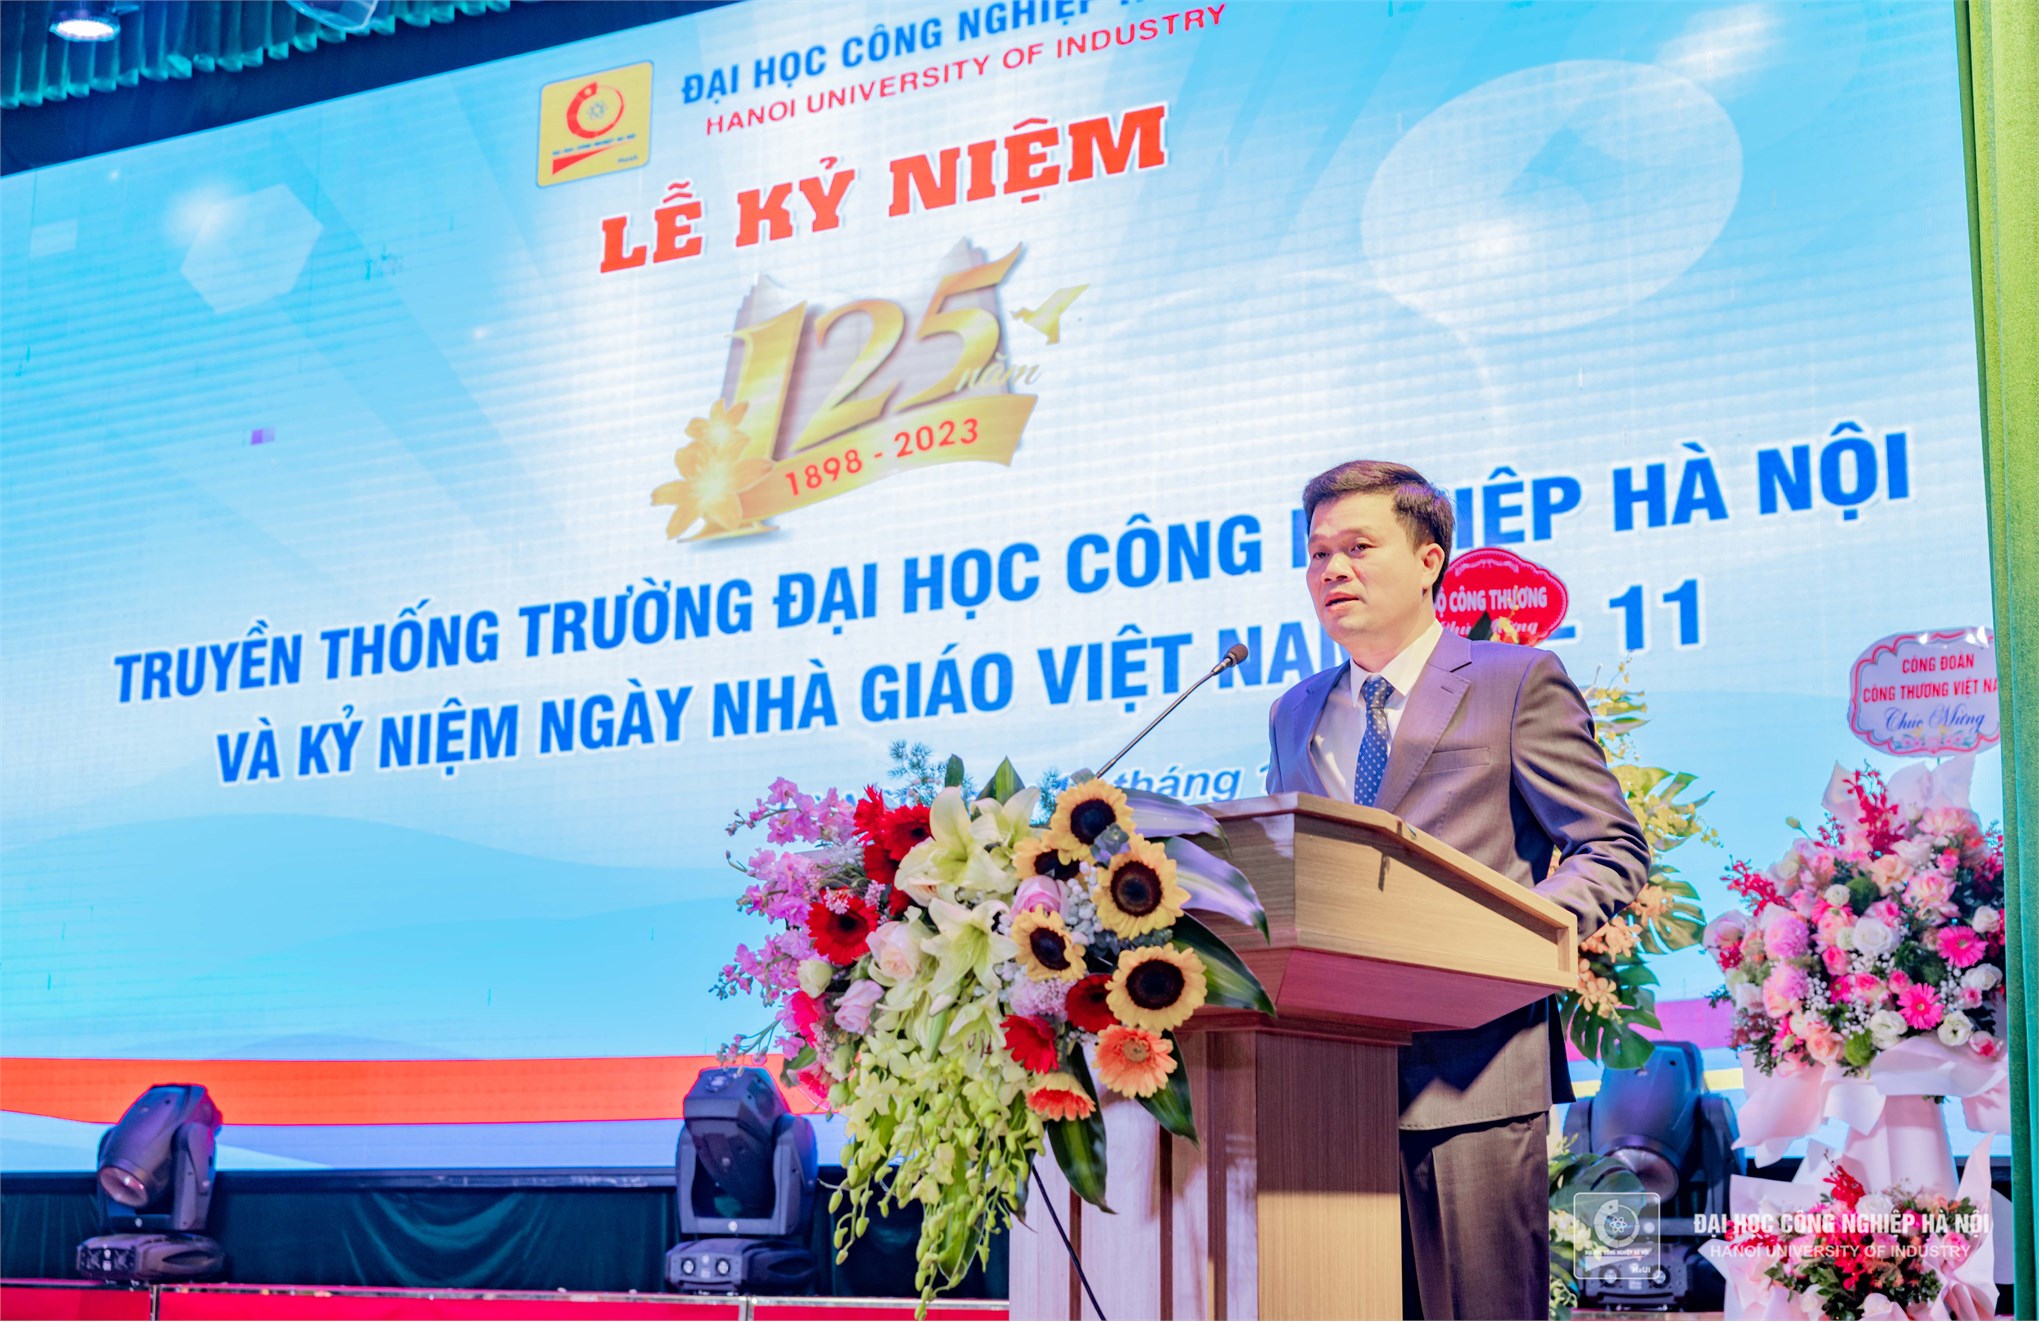 Lễ kỷ niệm 125 năm truyền thống Trường Đại học Công nghiệp Hà Nội (1898 – 2023) và 41 năm Ngày Nhà giáo Việt Nam 20/11